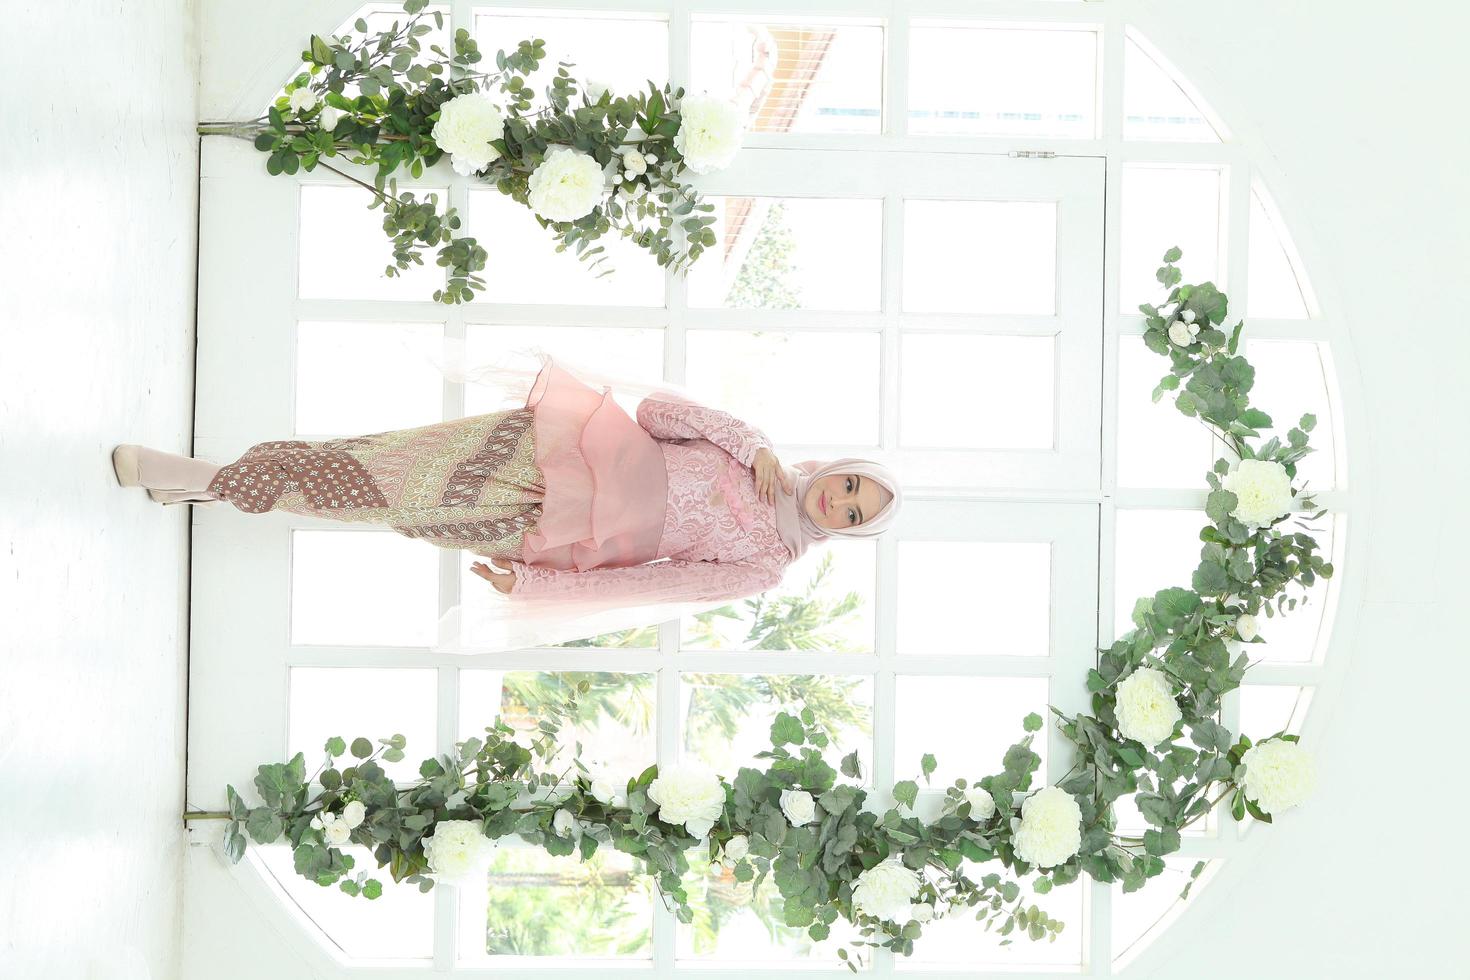 Schönes islamisches weibliches Modell mit Hijab-Mode, einem modernen Lifestyle-Outfit für muslimische Frauen. Konzept ein Hochzeitskleid, Schönheit oder Eidul Fitri. ein asiatisches Mädchenmodell mit Hijab bei einem Indoor-Fotoshooting foto